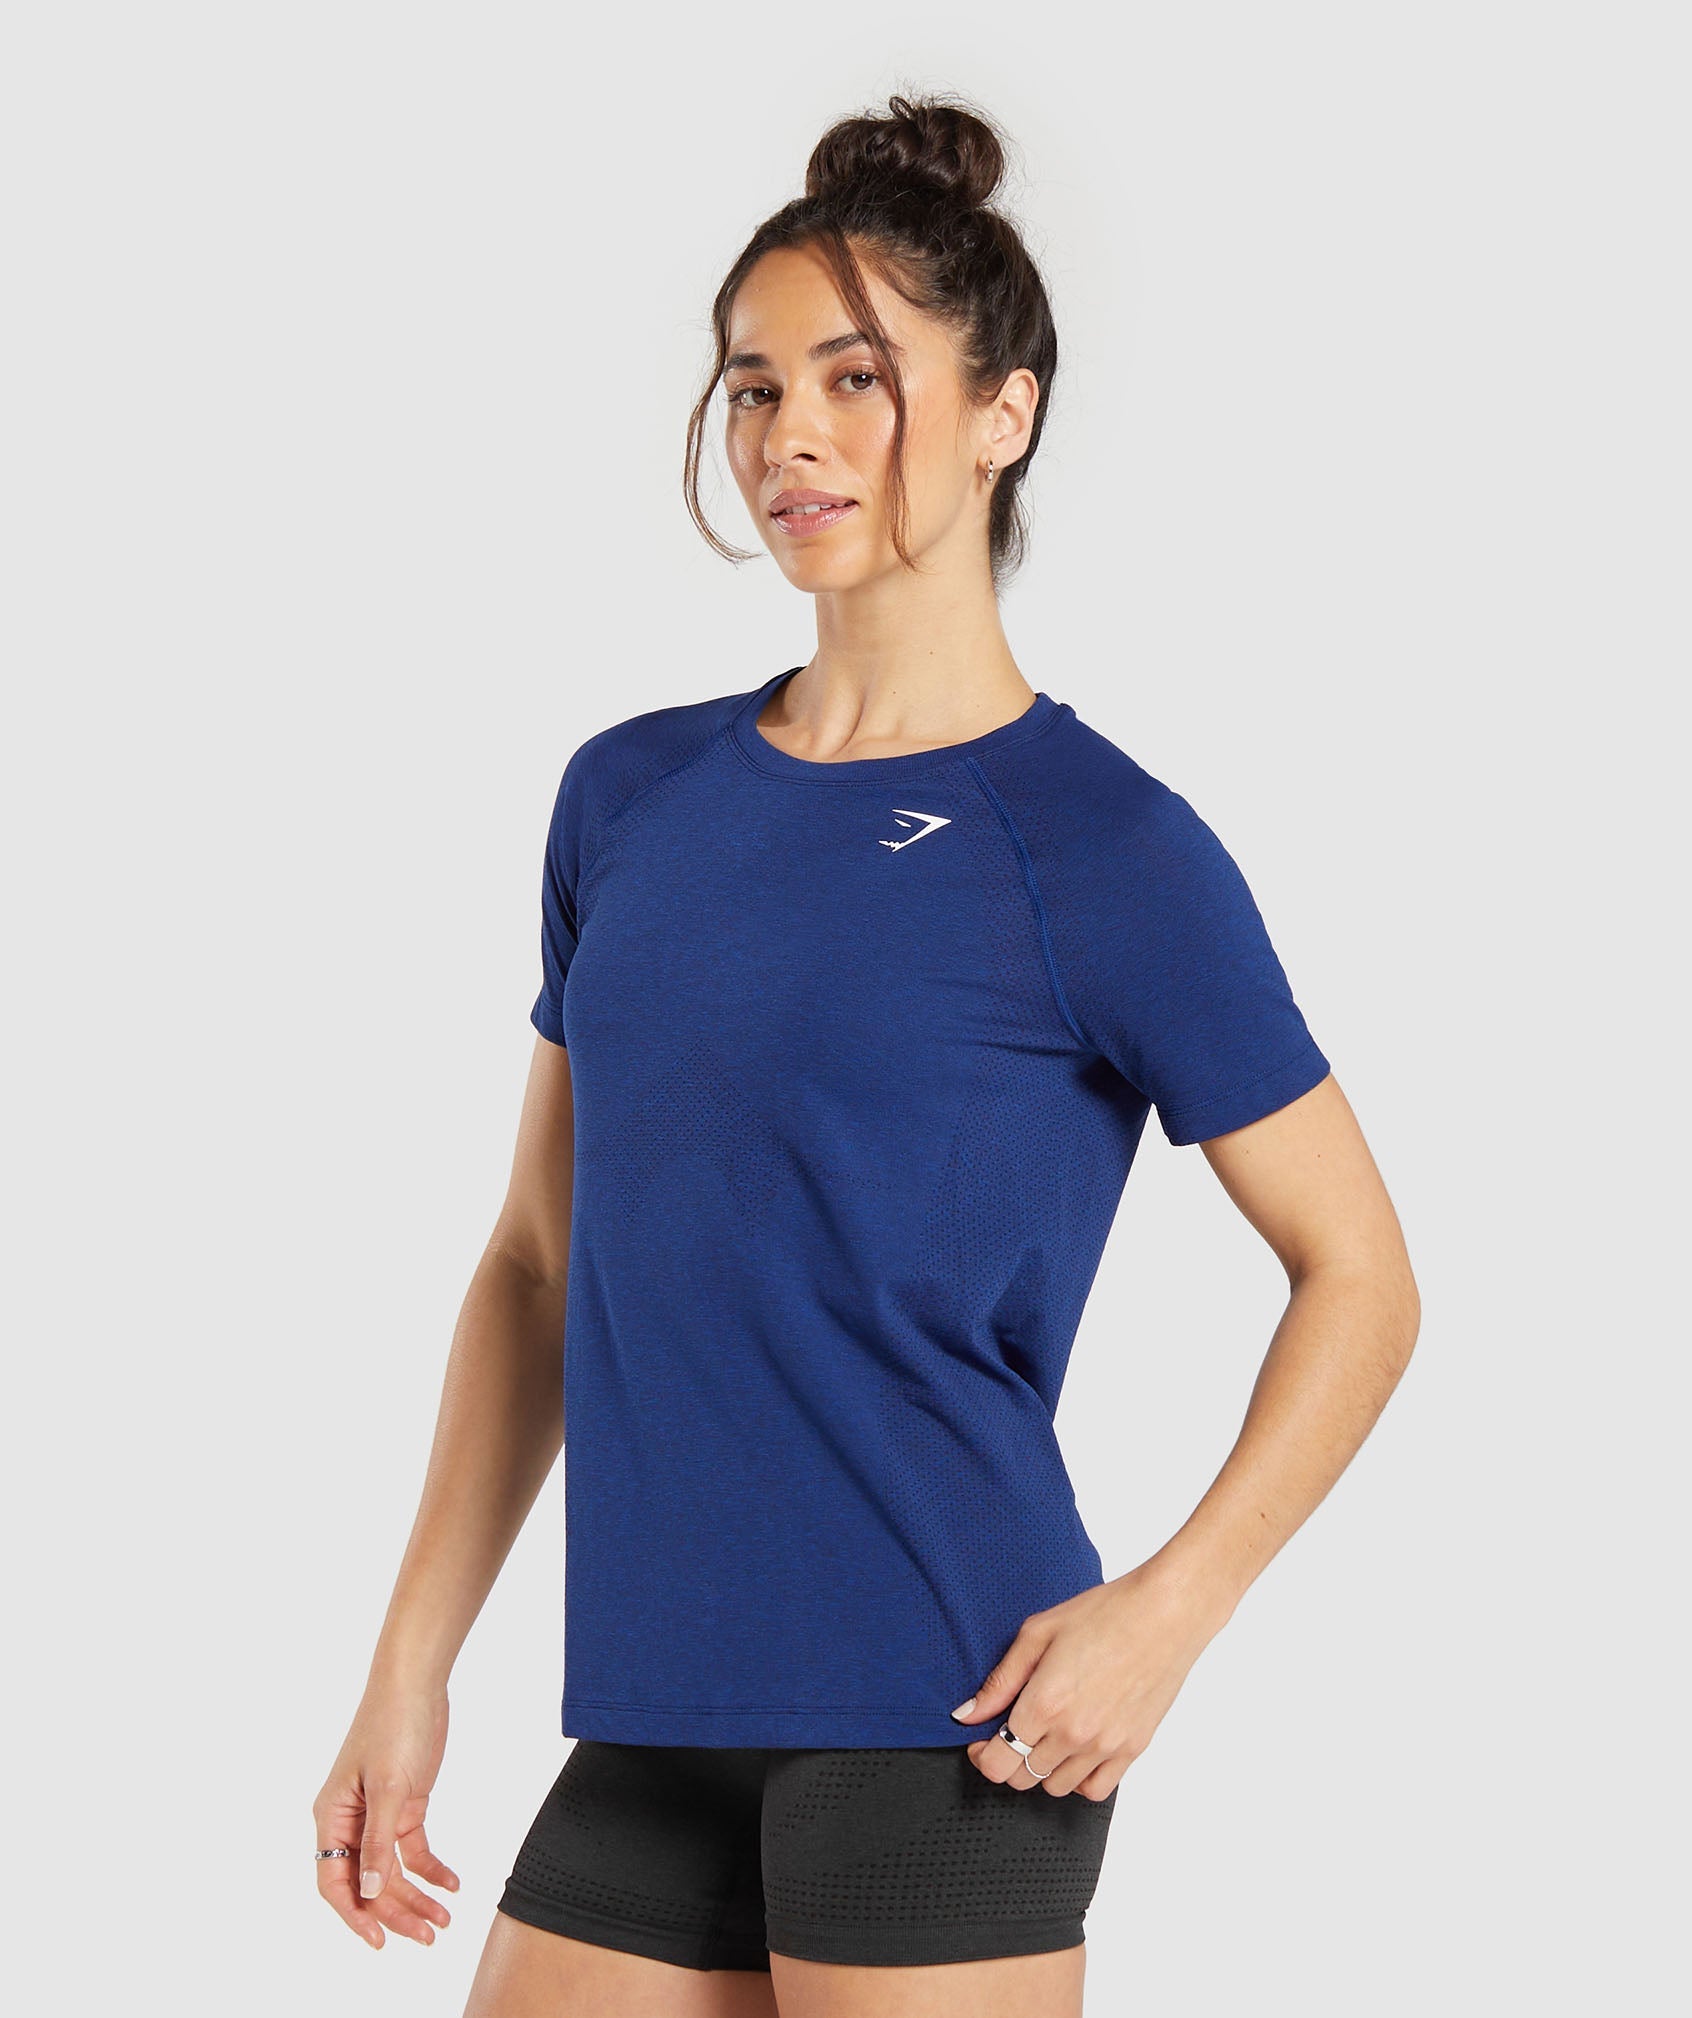 Vital Seamless 2.0 Light T-Shirt in Stellar Blue Marl - view 3